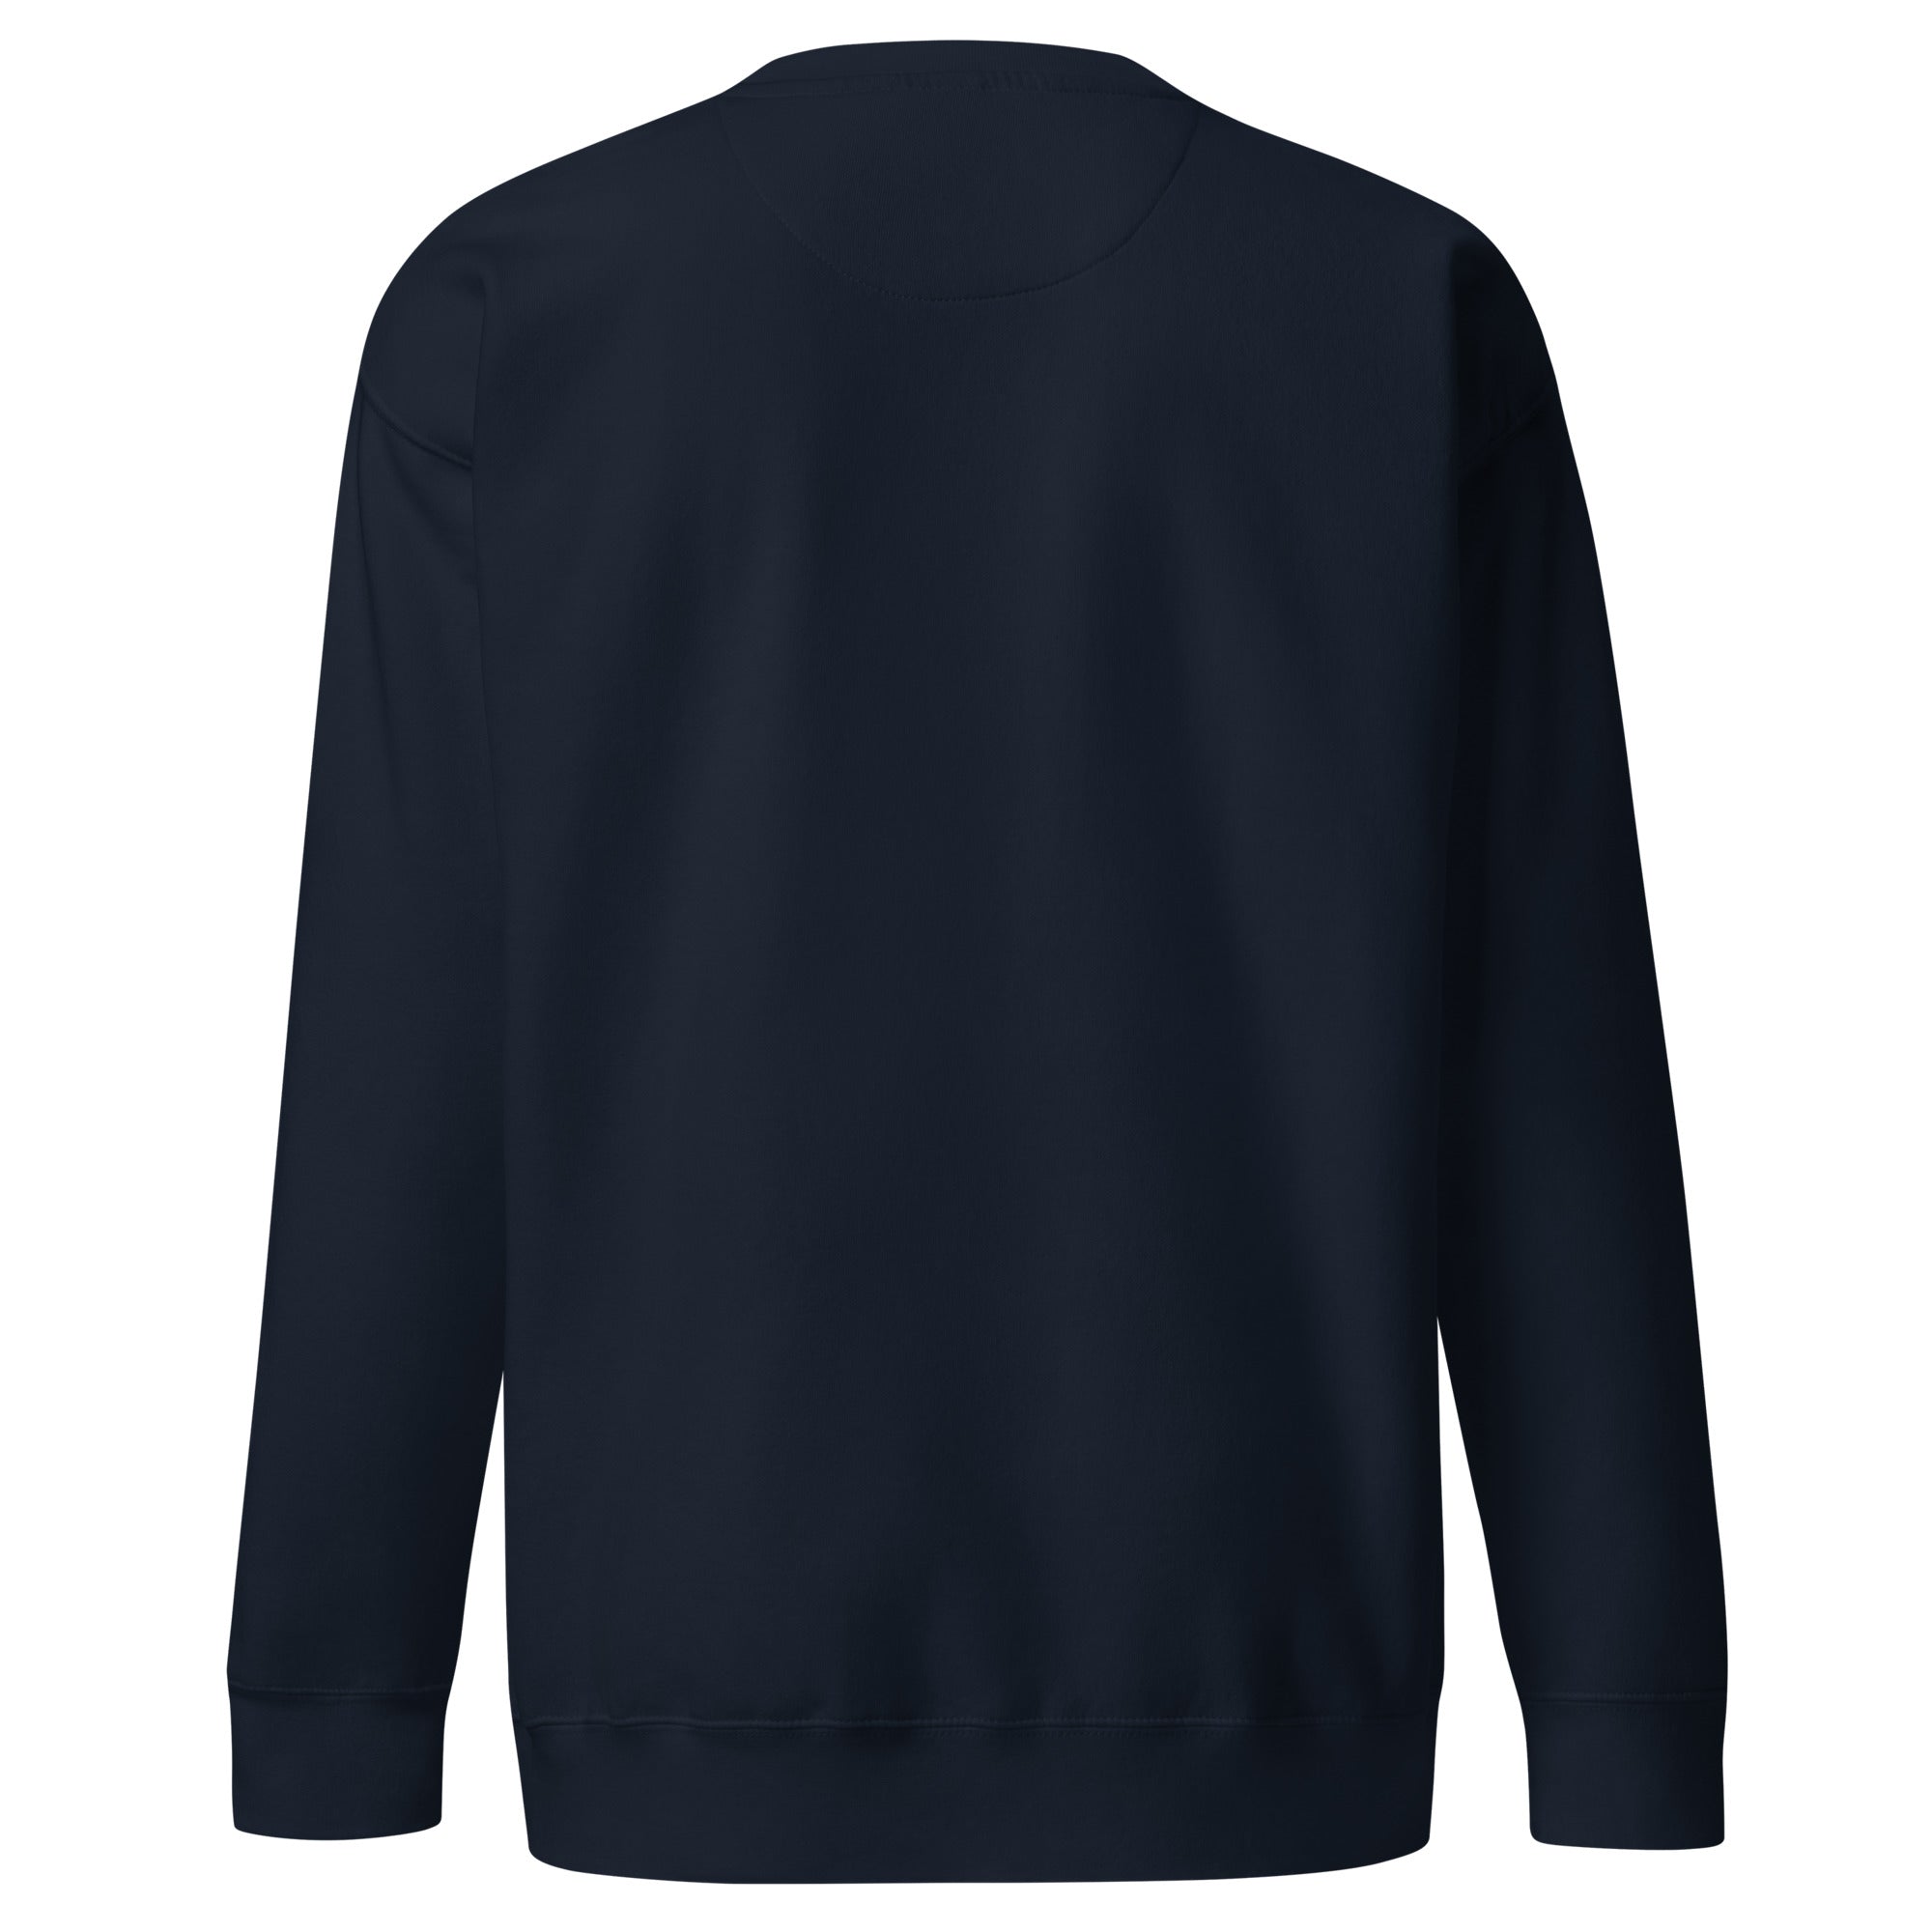 Sweatshirt premium unisexe No Skiboots on Dancefloor grand motif brodé